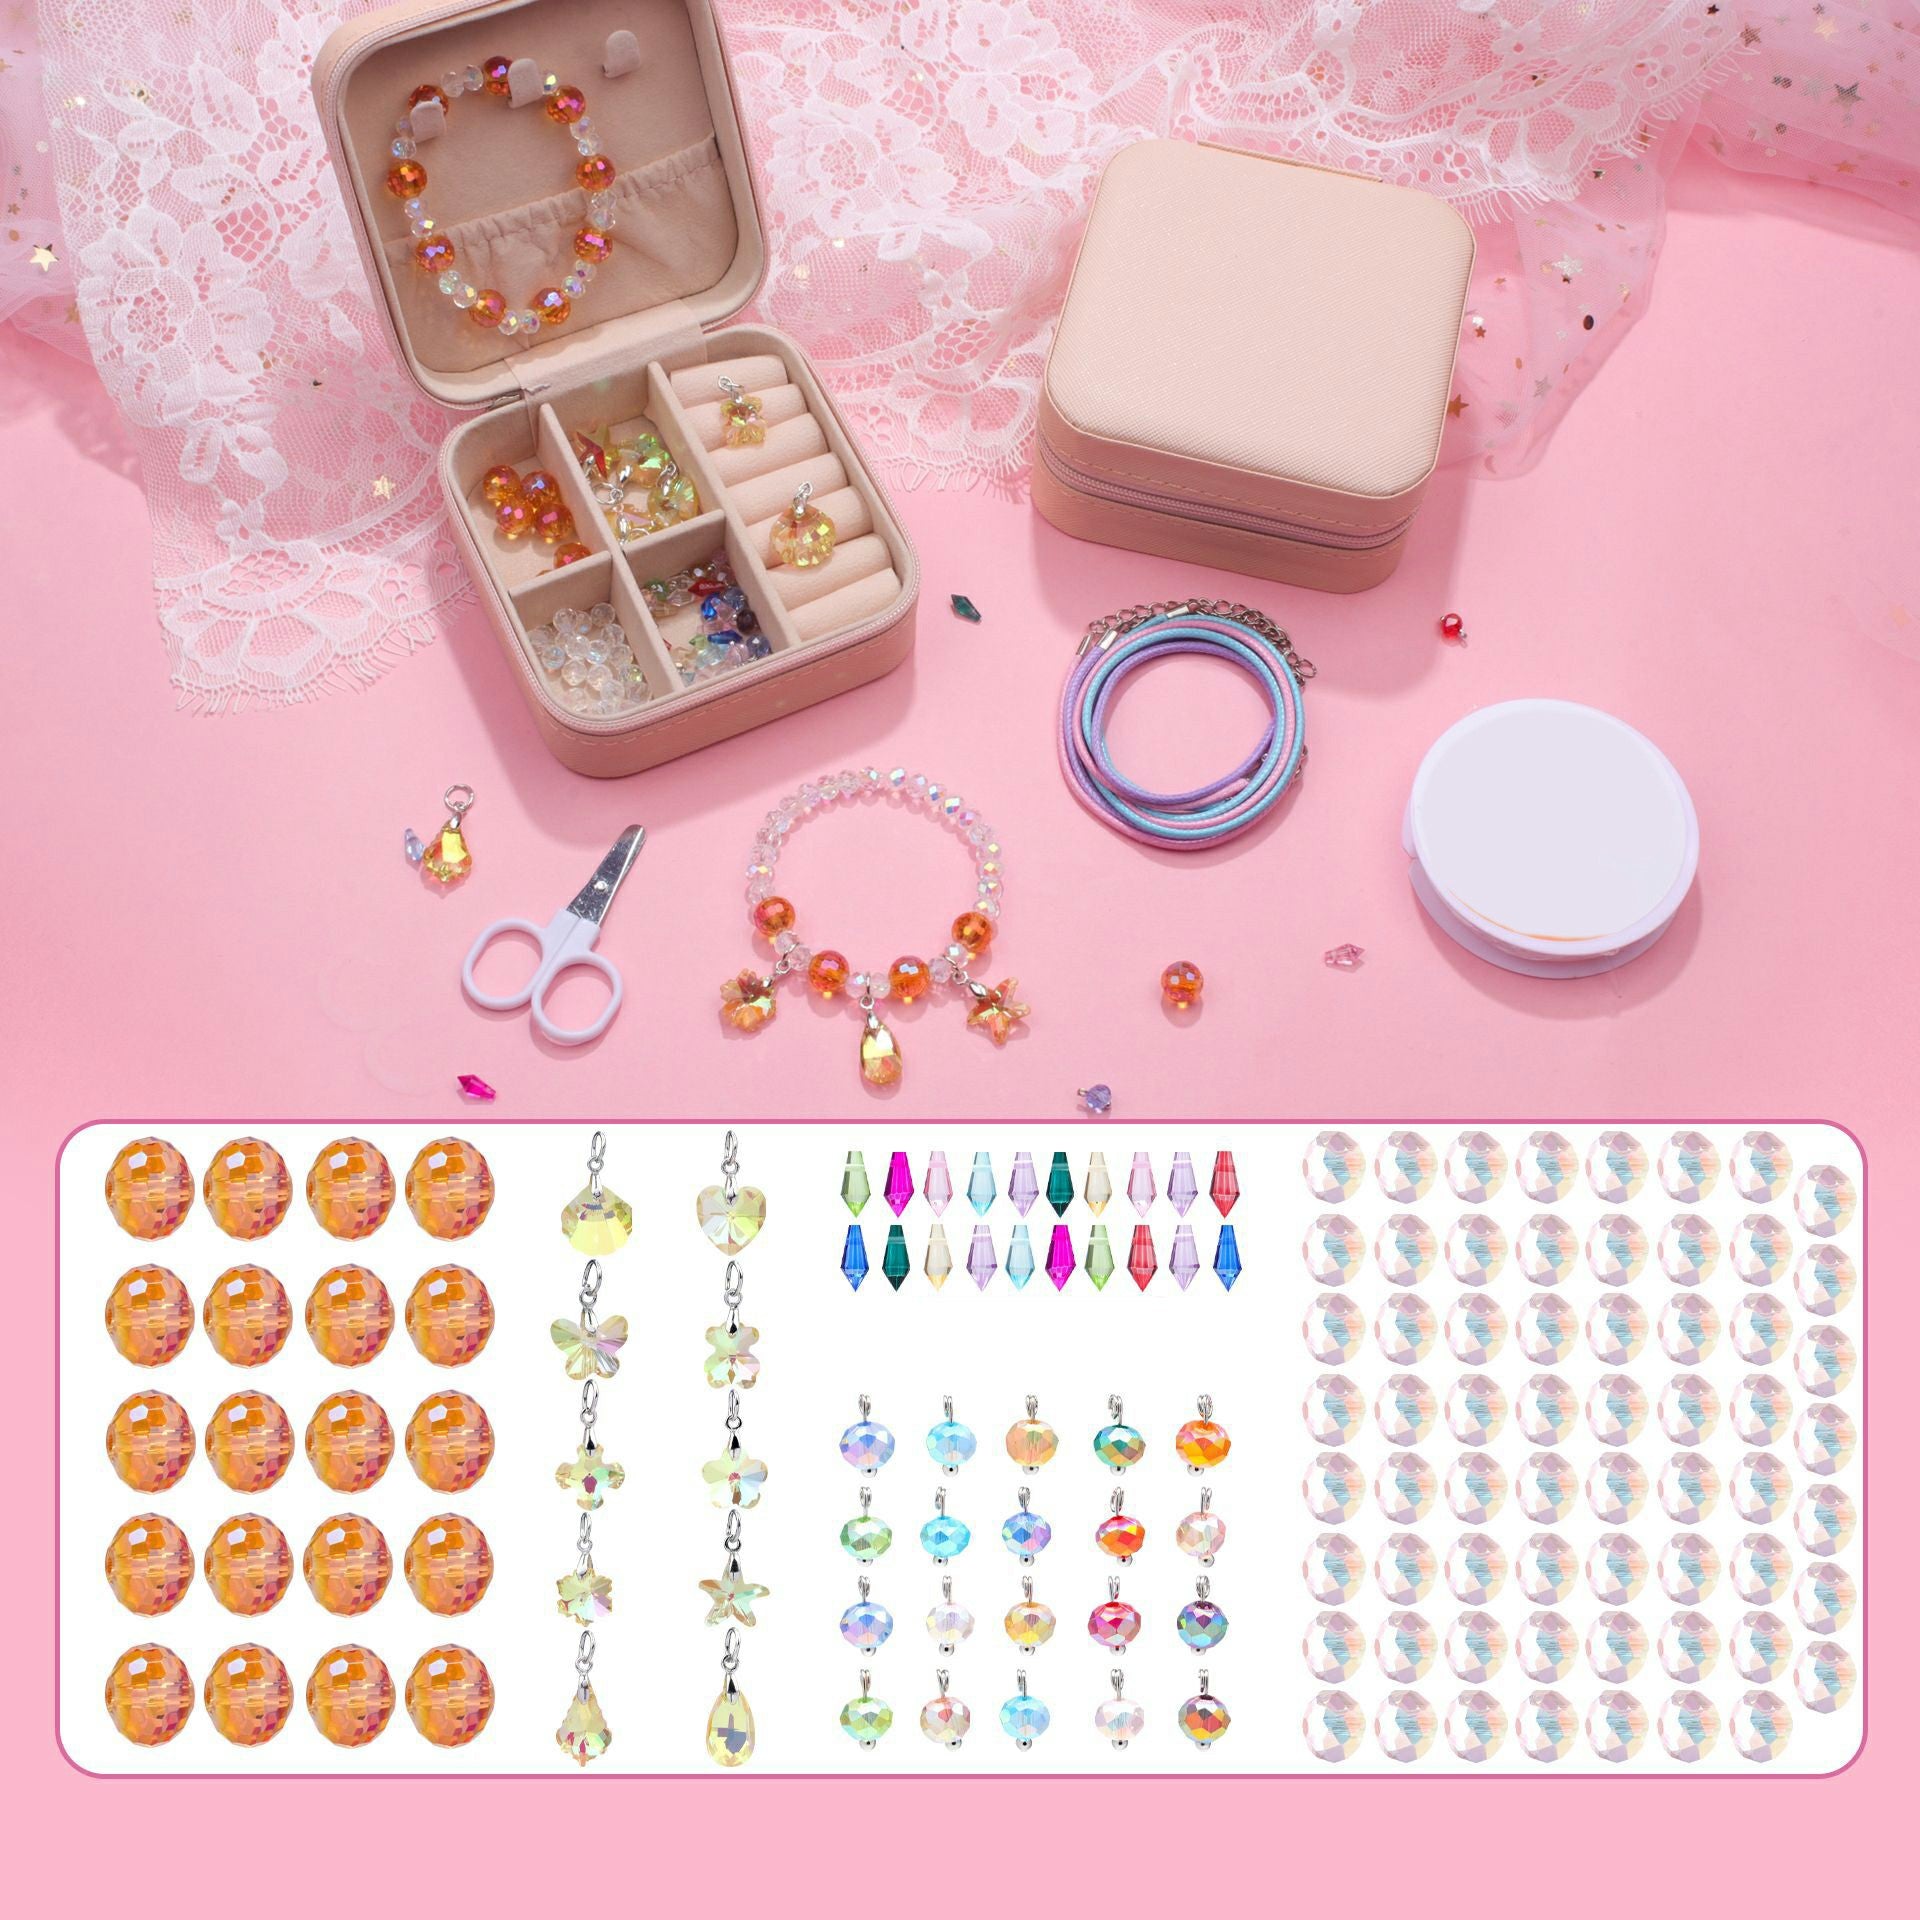 140Pcs / Set Kids Girls DIY Jewellery Craft Bracelet Making Supplies Kit with Gift Box - Orange